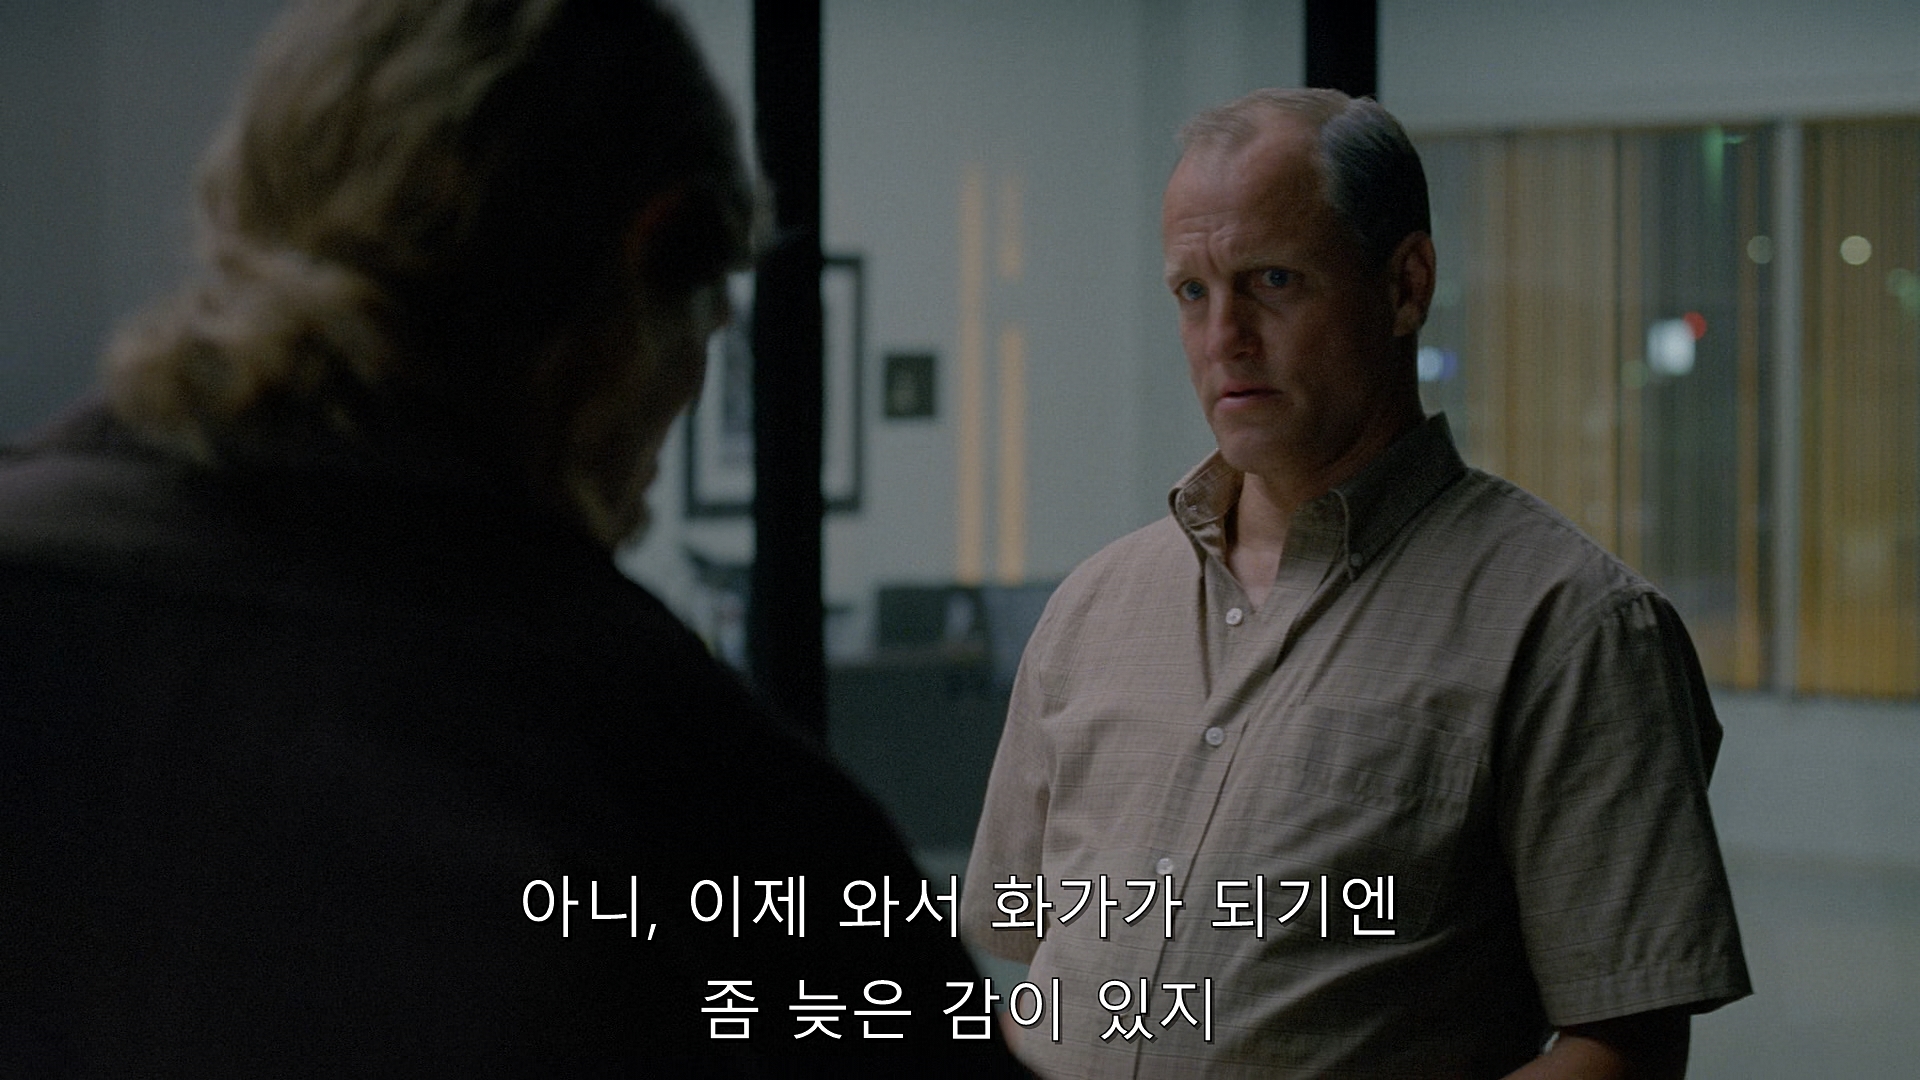 True Detective (2014) - S01E07 - After You've Gone (1080p BluRay x265 afm72).mkv_001675627.jpg